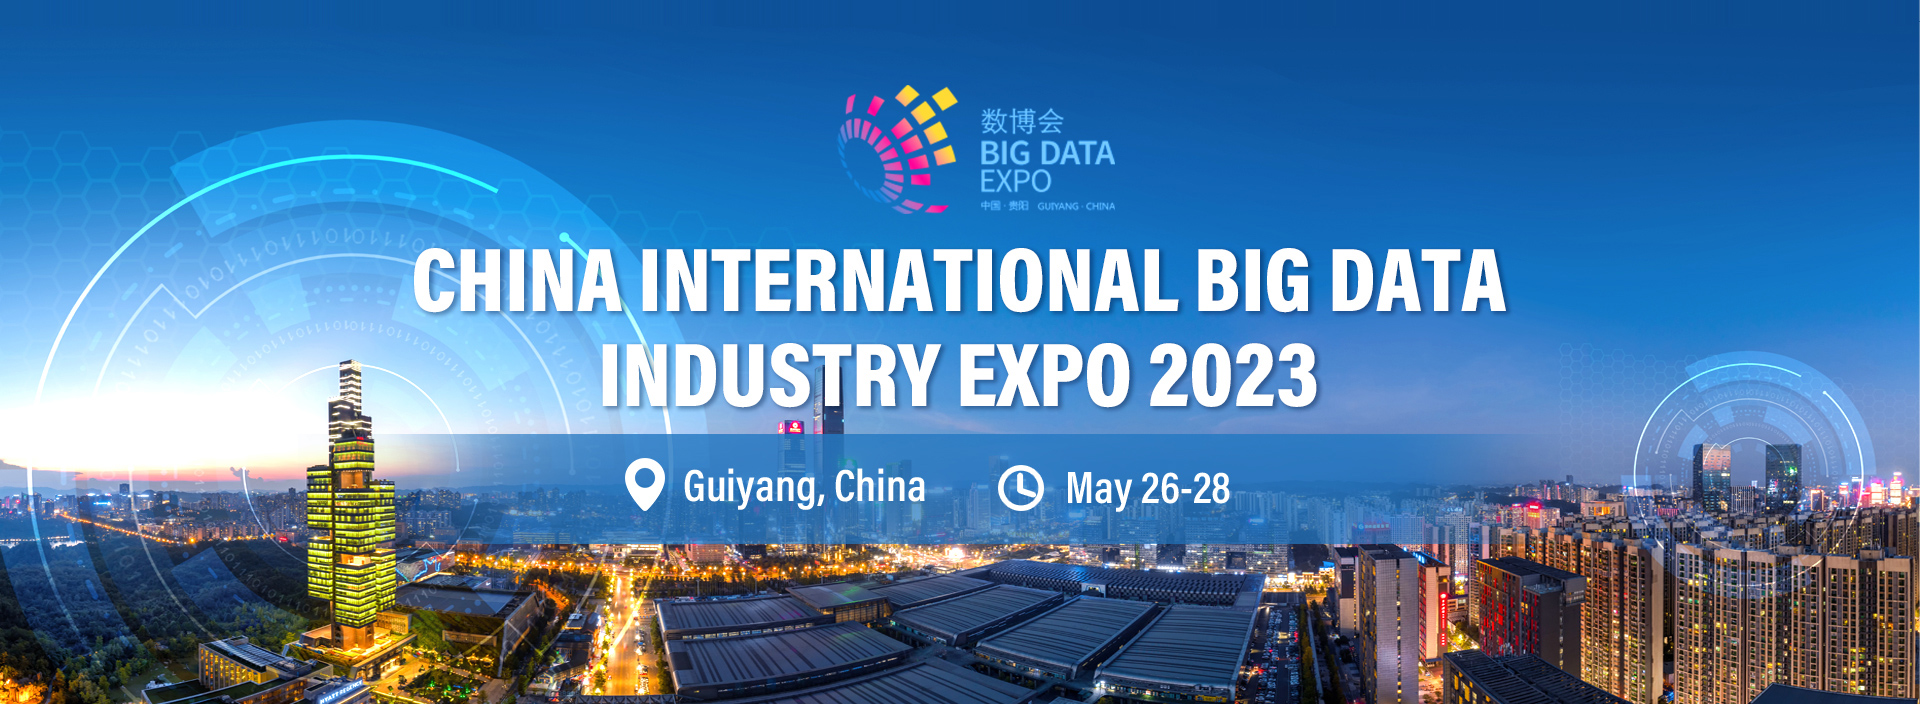 Big Data Expo 2023